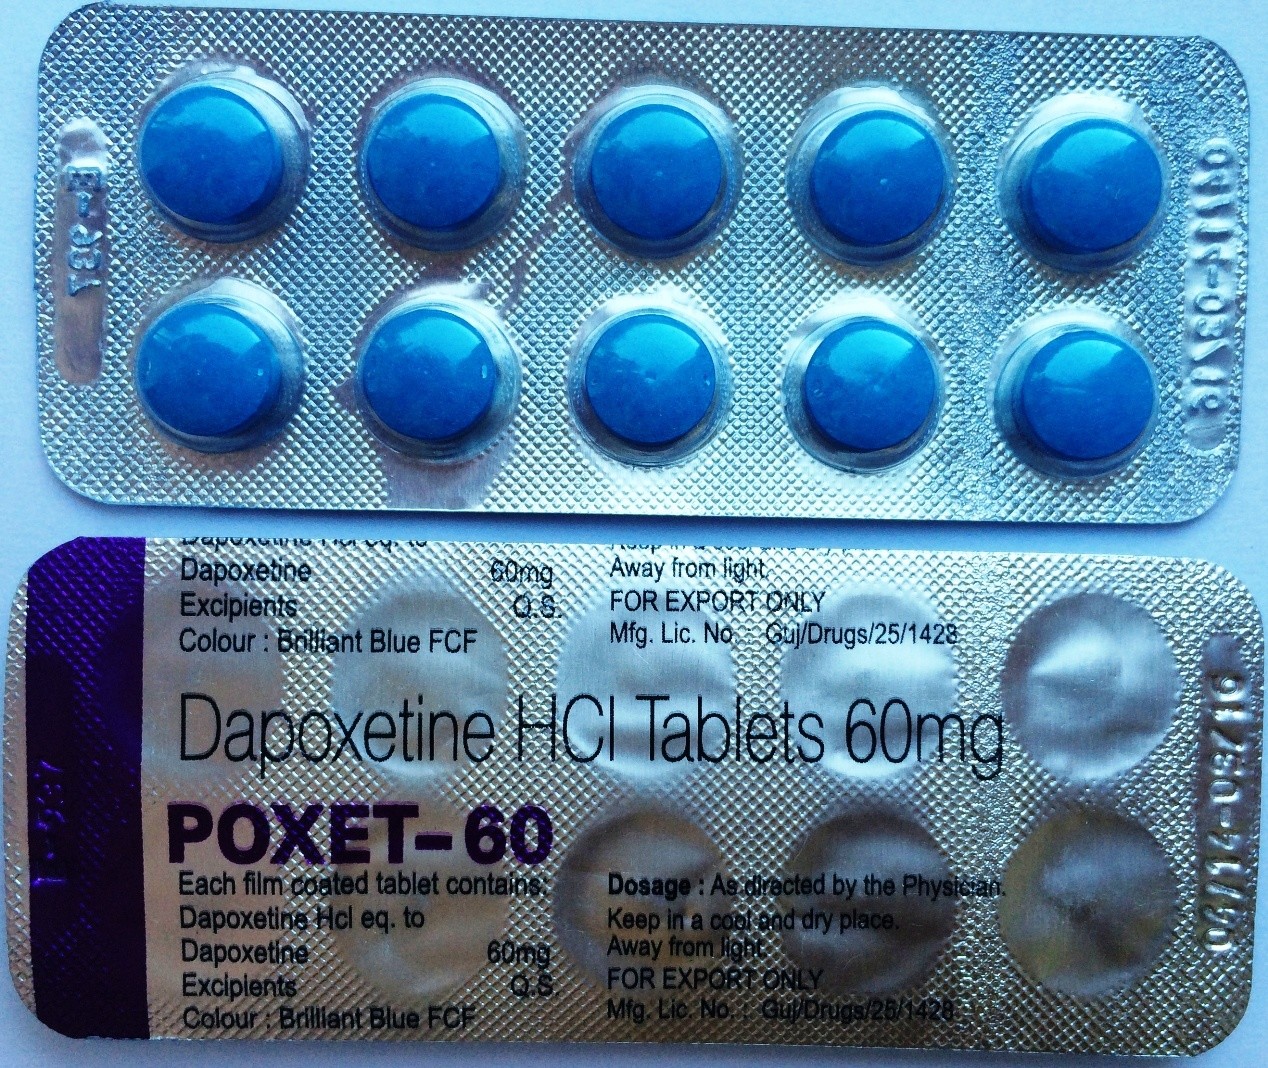 Таблетки для продления полового акта мужчине. Poxet-60 (дапоксетин) - 60mg. Дапоксетин 60 мг. Таблетки для задержки Семяизвержения. Дапоксетин 10 мг.